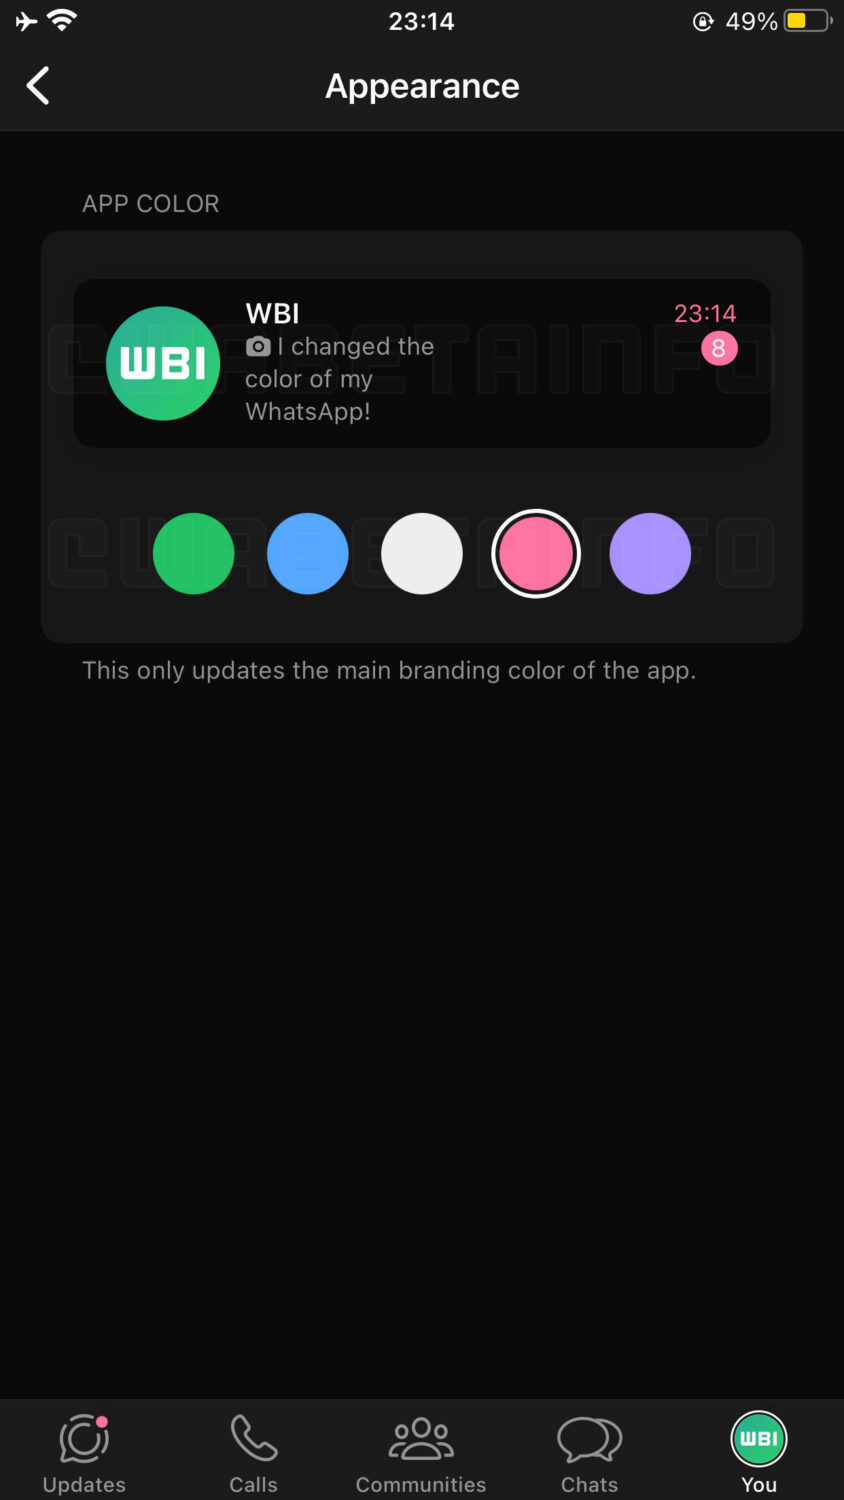 تطبيق واتساب يطلق ميزة اختيار لون الموضوع لمستخدمي iOS، حيث يمكنك الاختيار من بين خمسة ألوان رائعة، مما يجعل محادثاتك أكثر شخصية وإبداعا.